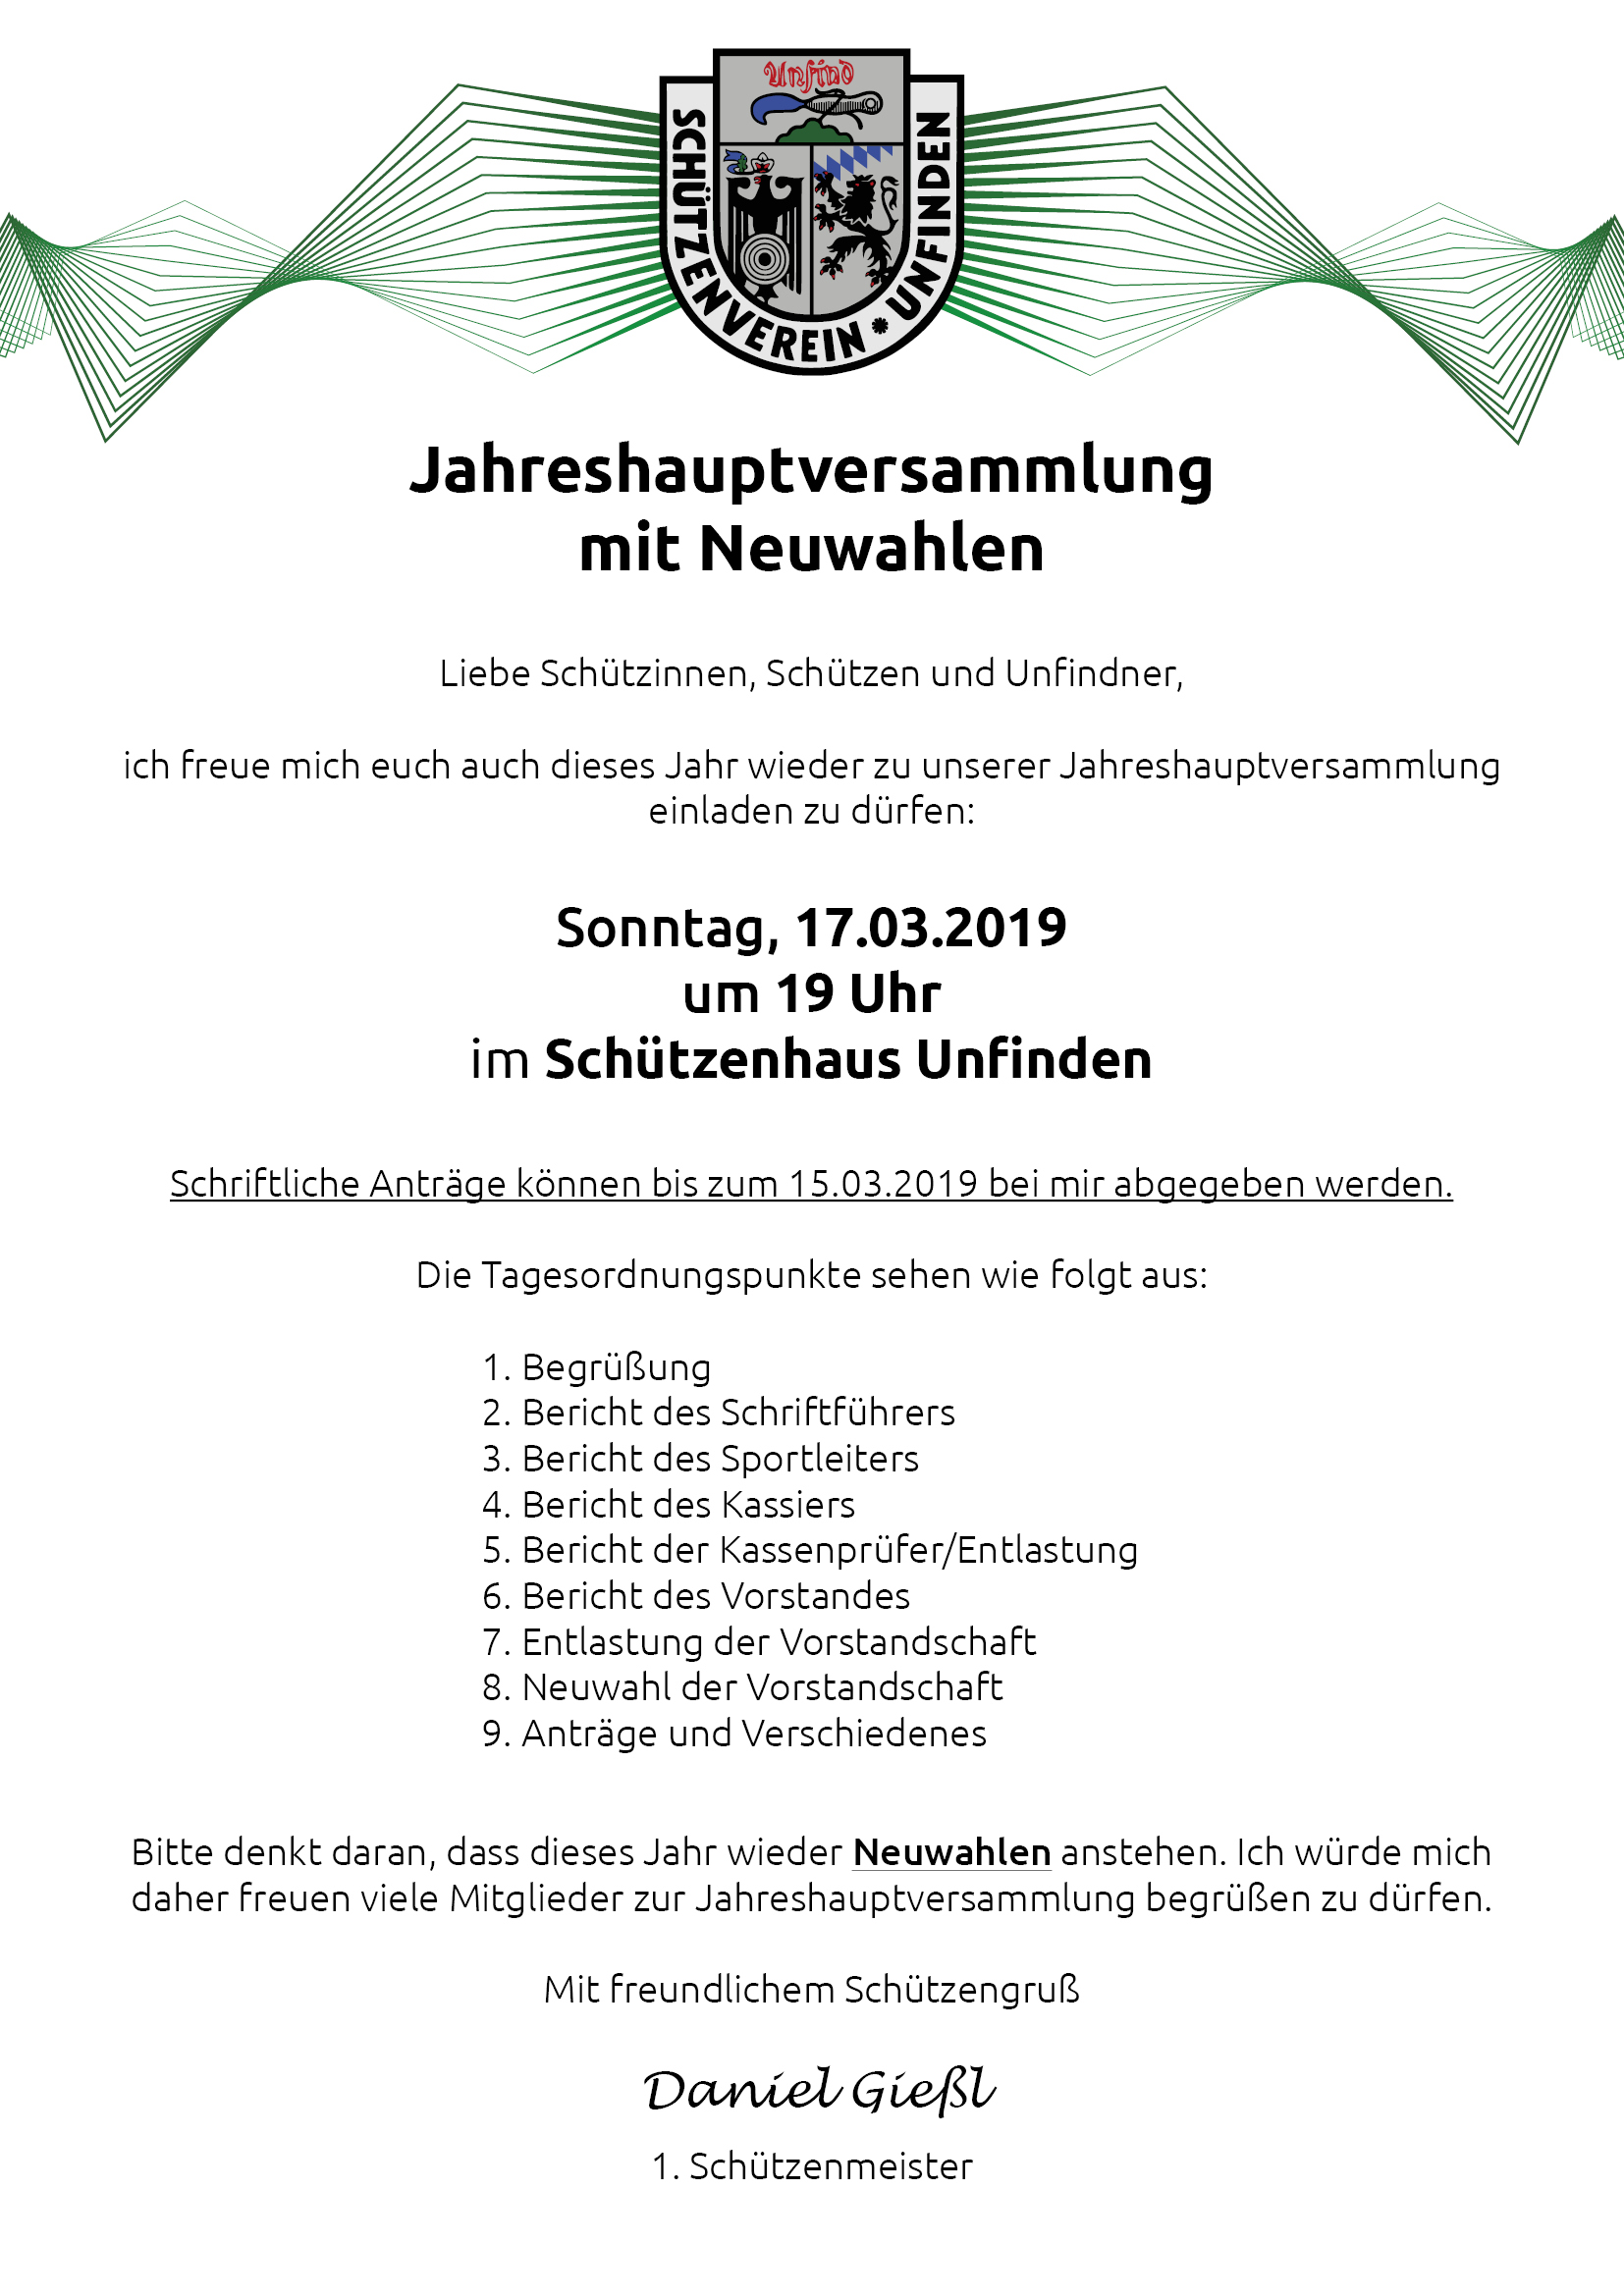 Einladung zur Jahreshauptversammlung 2019 mit Neuwahlen am 17.03.2019 um 19 Uhr im Schützenhaus Unfinden.